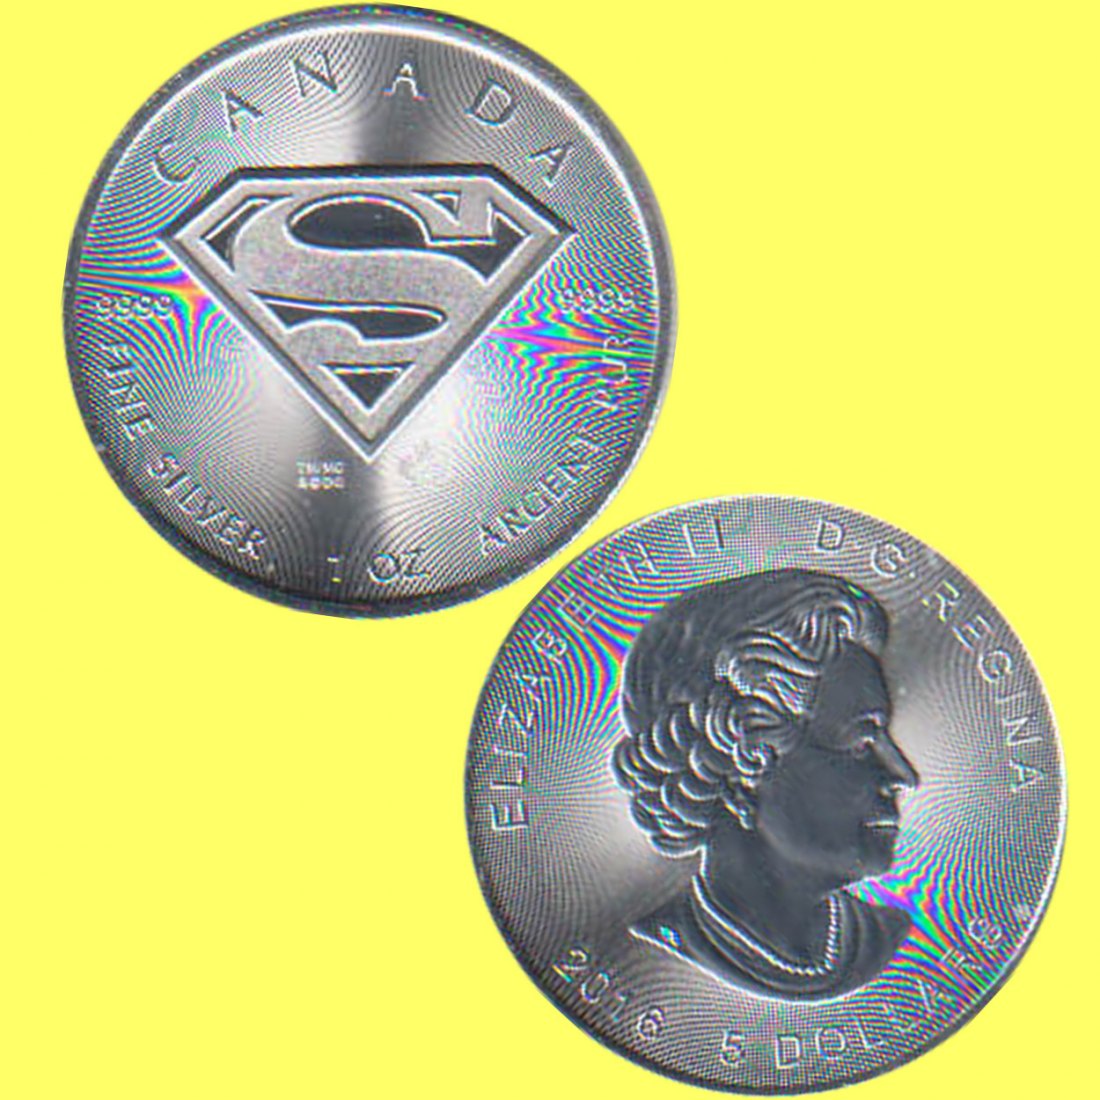  Kanada 5 Dollars Silbermünze *Superman - Logo* 2016 1oz Silber mit Sicherheitshologramm   